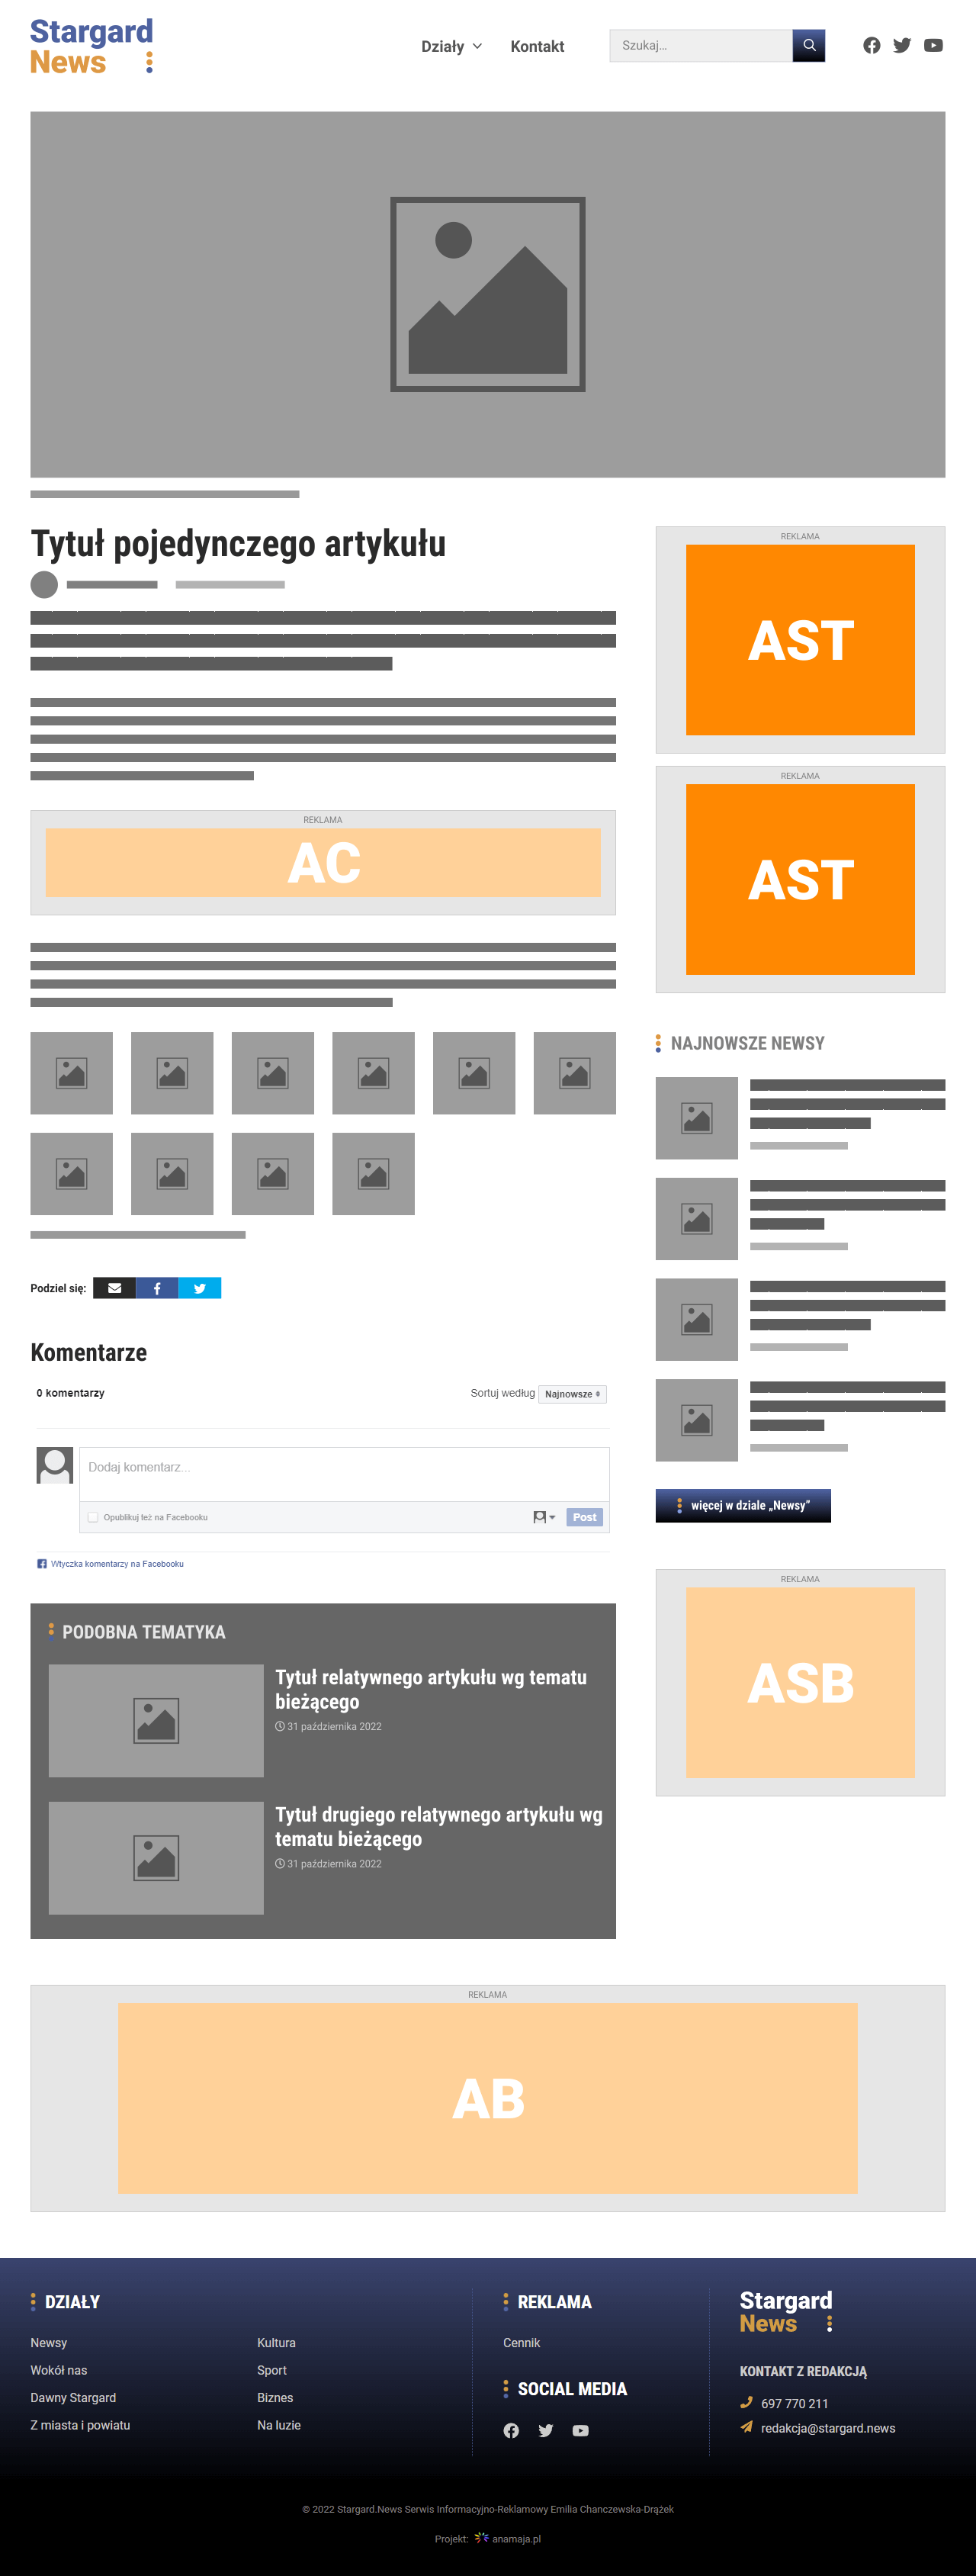 Umiejscowienie reklamy AST na desktopach